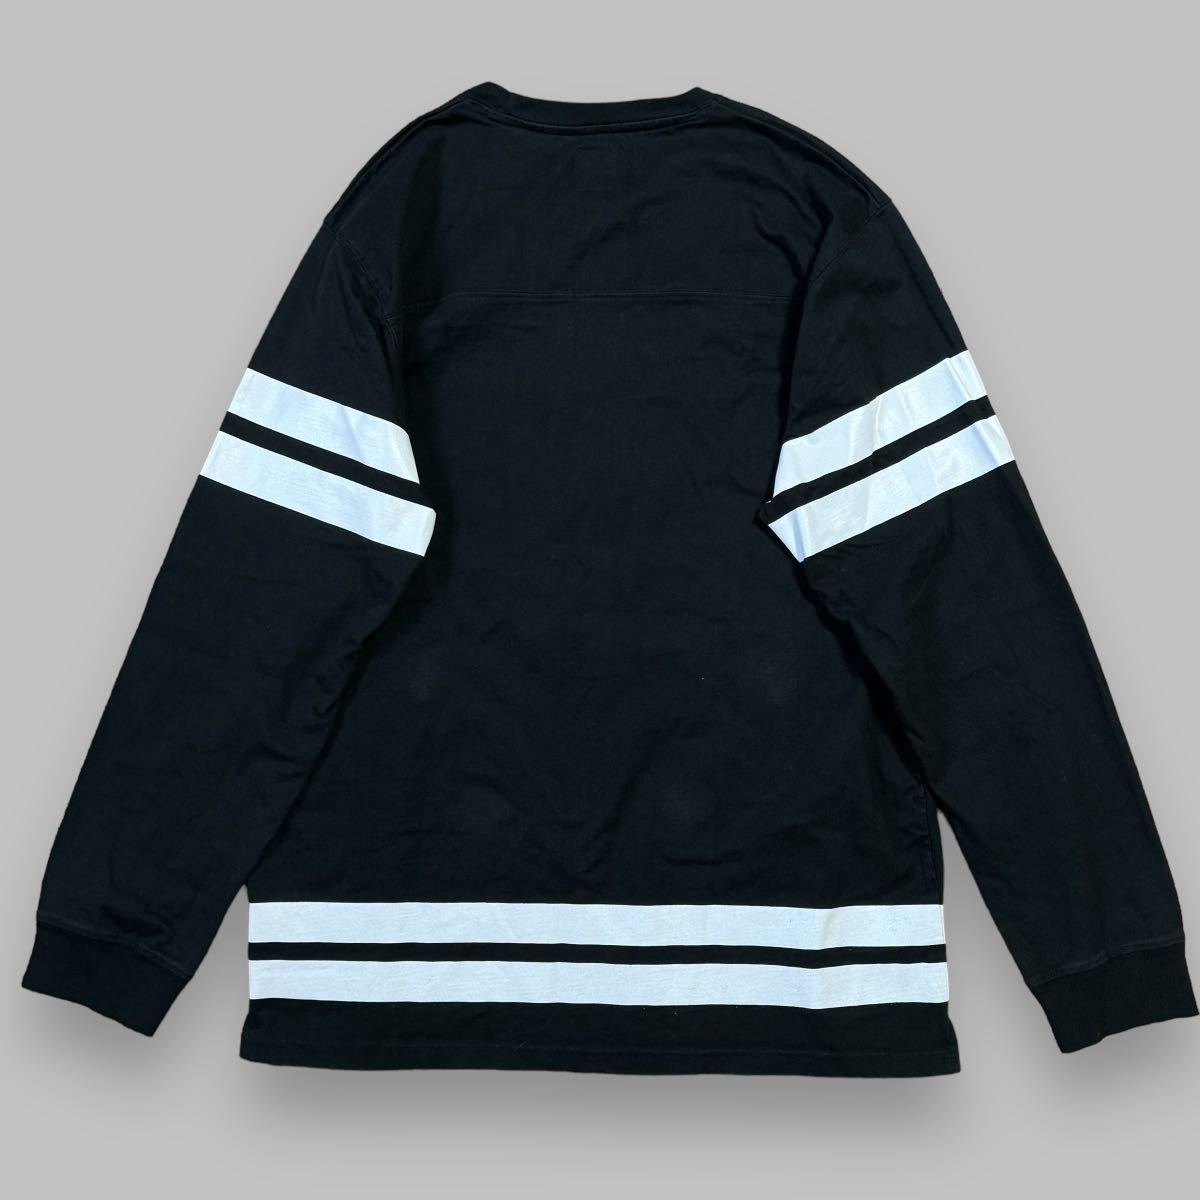 【 XL 】 ステューシー STUSSY ビッグロゴ ラインデザイン へビーウェイト 長袖 Tシャツ ブラック 黒 ロンT スウェット オールド_画像2